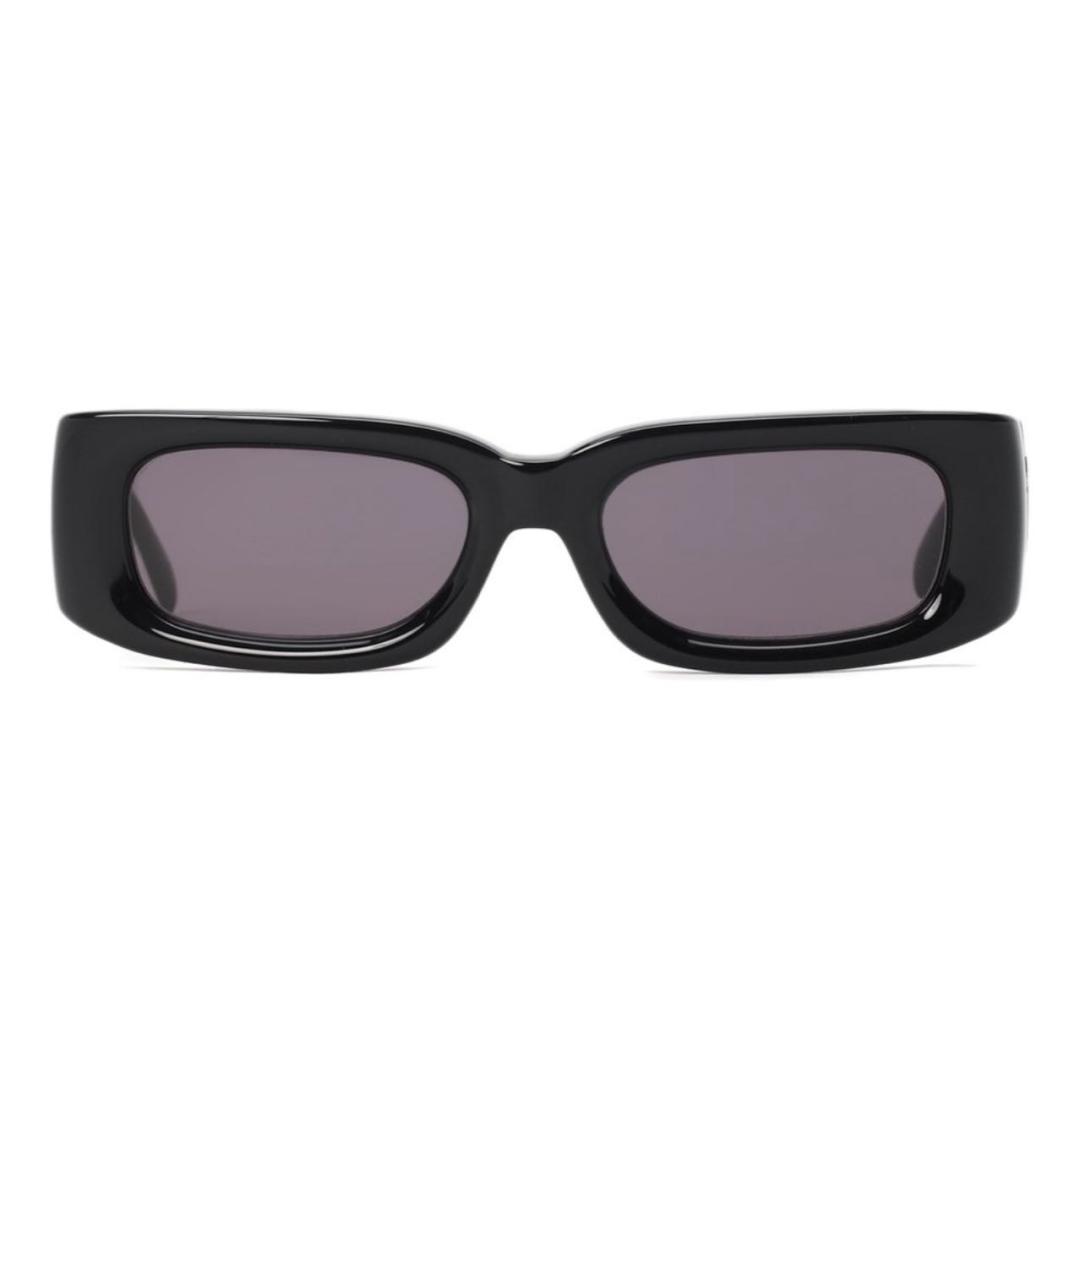 MISBHV Черные пластиковые солнцезащитные очки, фото 2